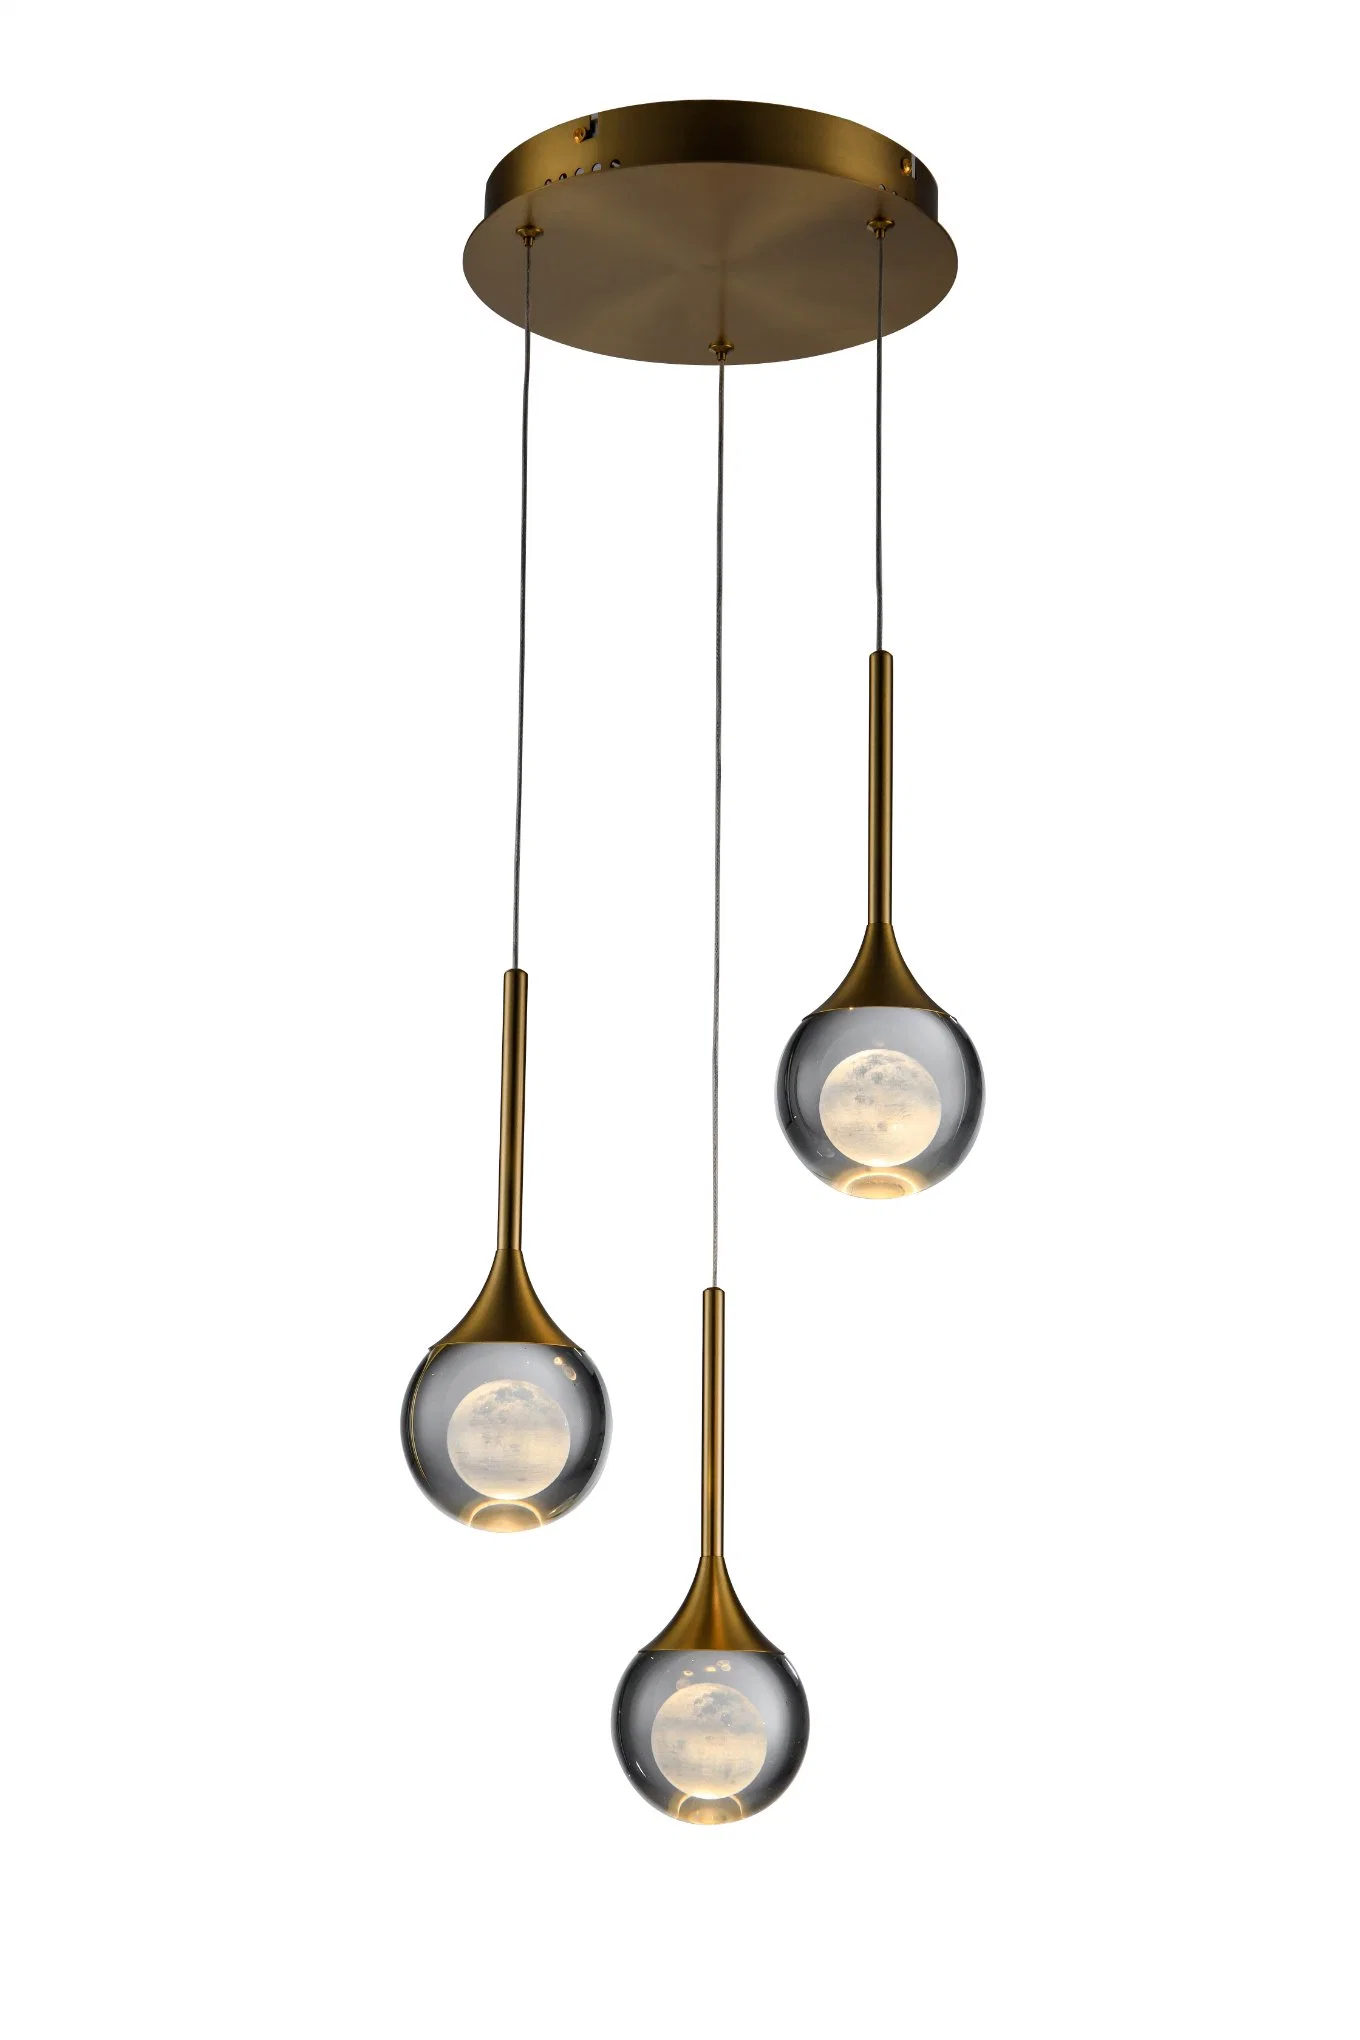 Masivel Usine Éclairage Moderne Lustre de Luxe Lumière Cristal LED Lampe Suspendue